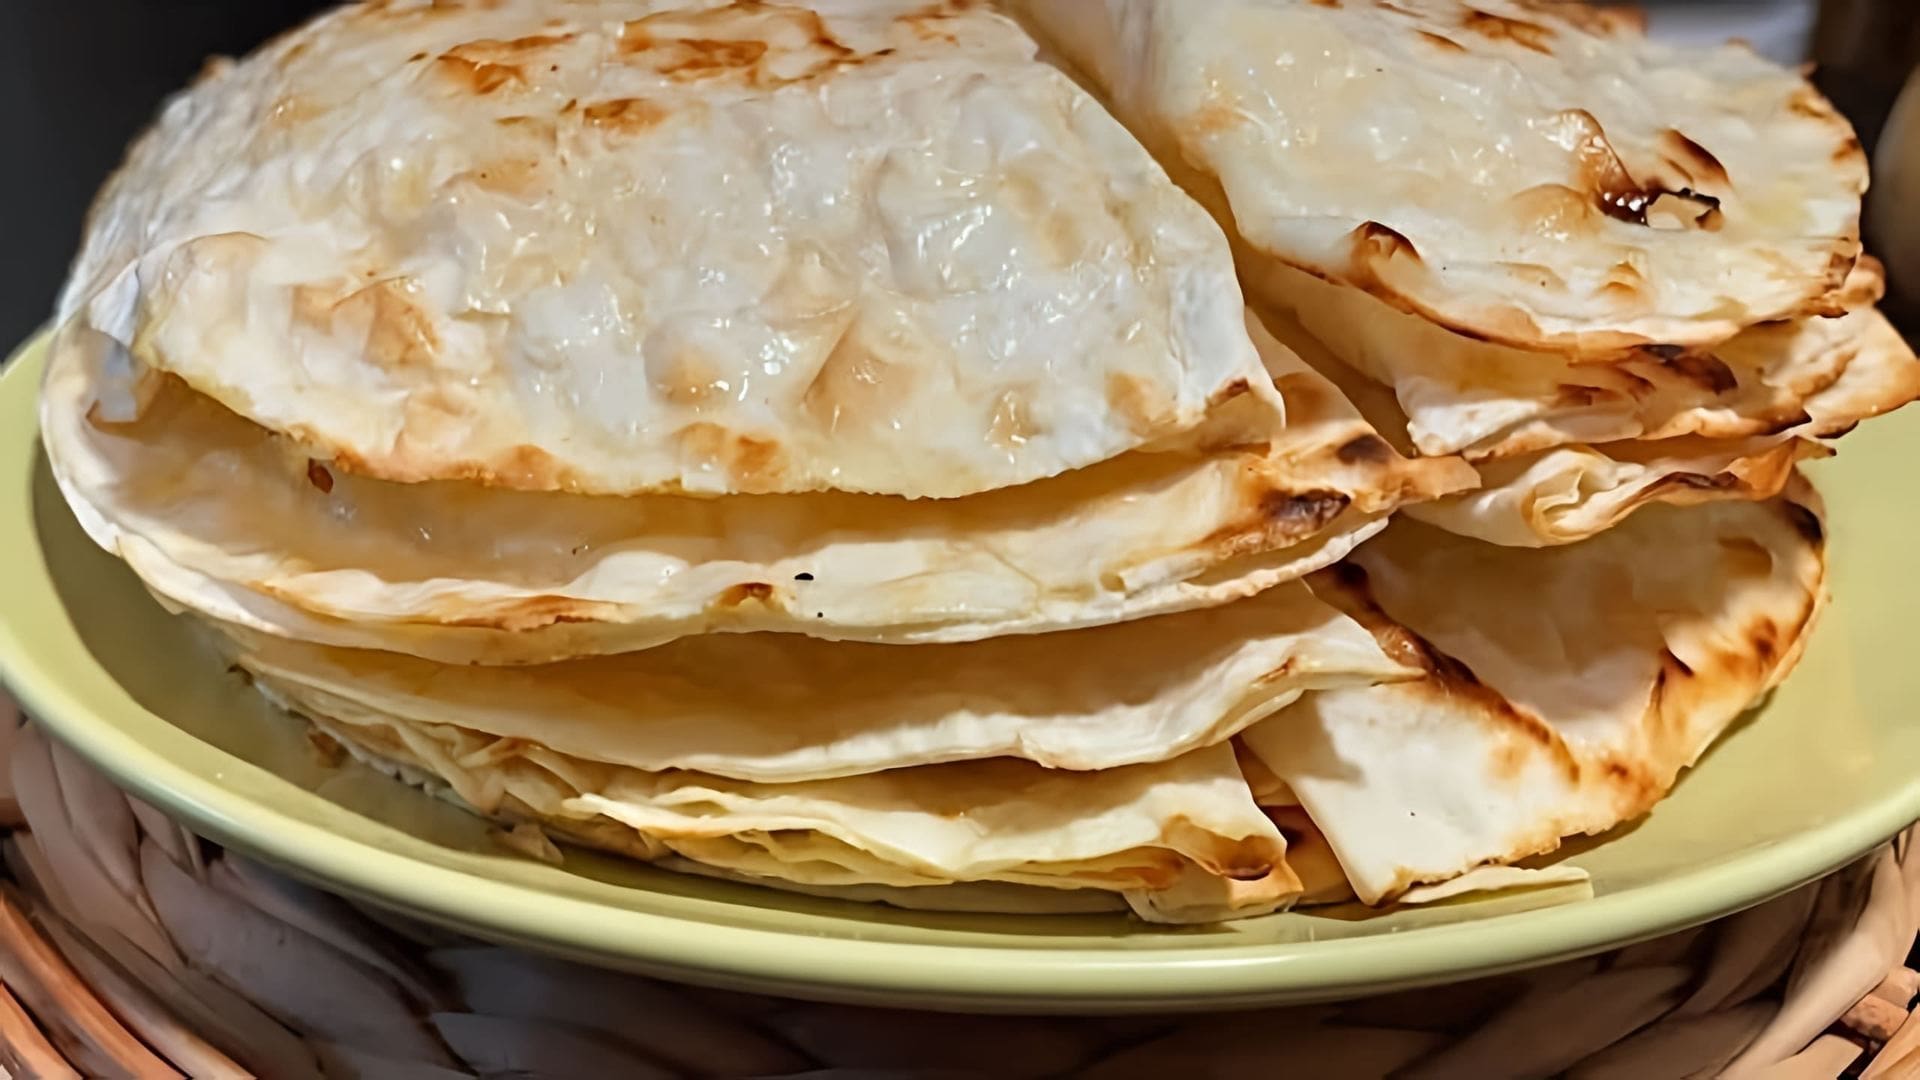 Хычины - это традиционное блюдо кавказской кухни, которое готовится из тонкого лаваша с начинкой из картофеля и сыра